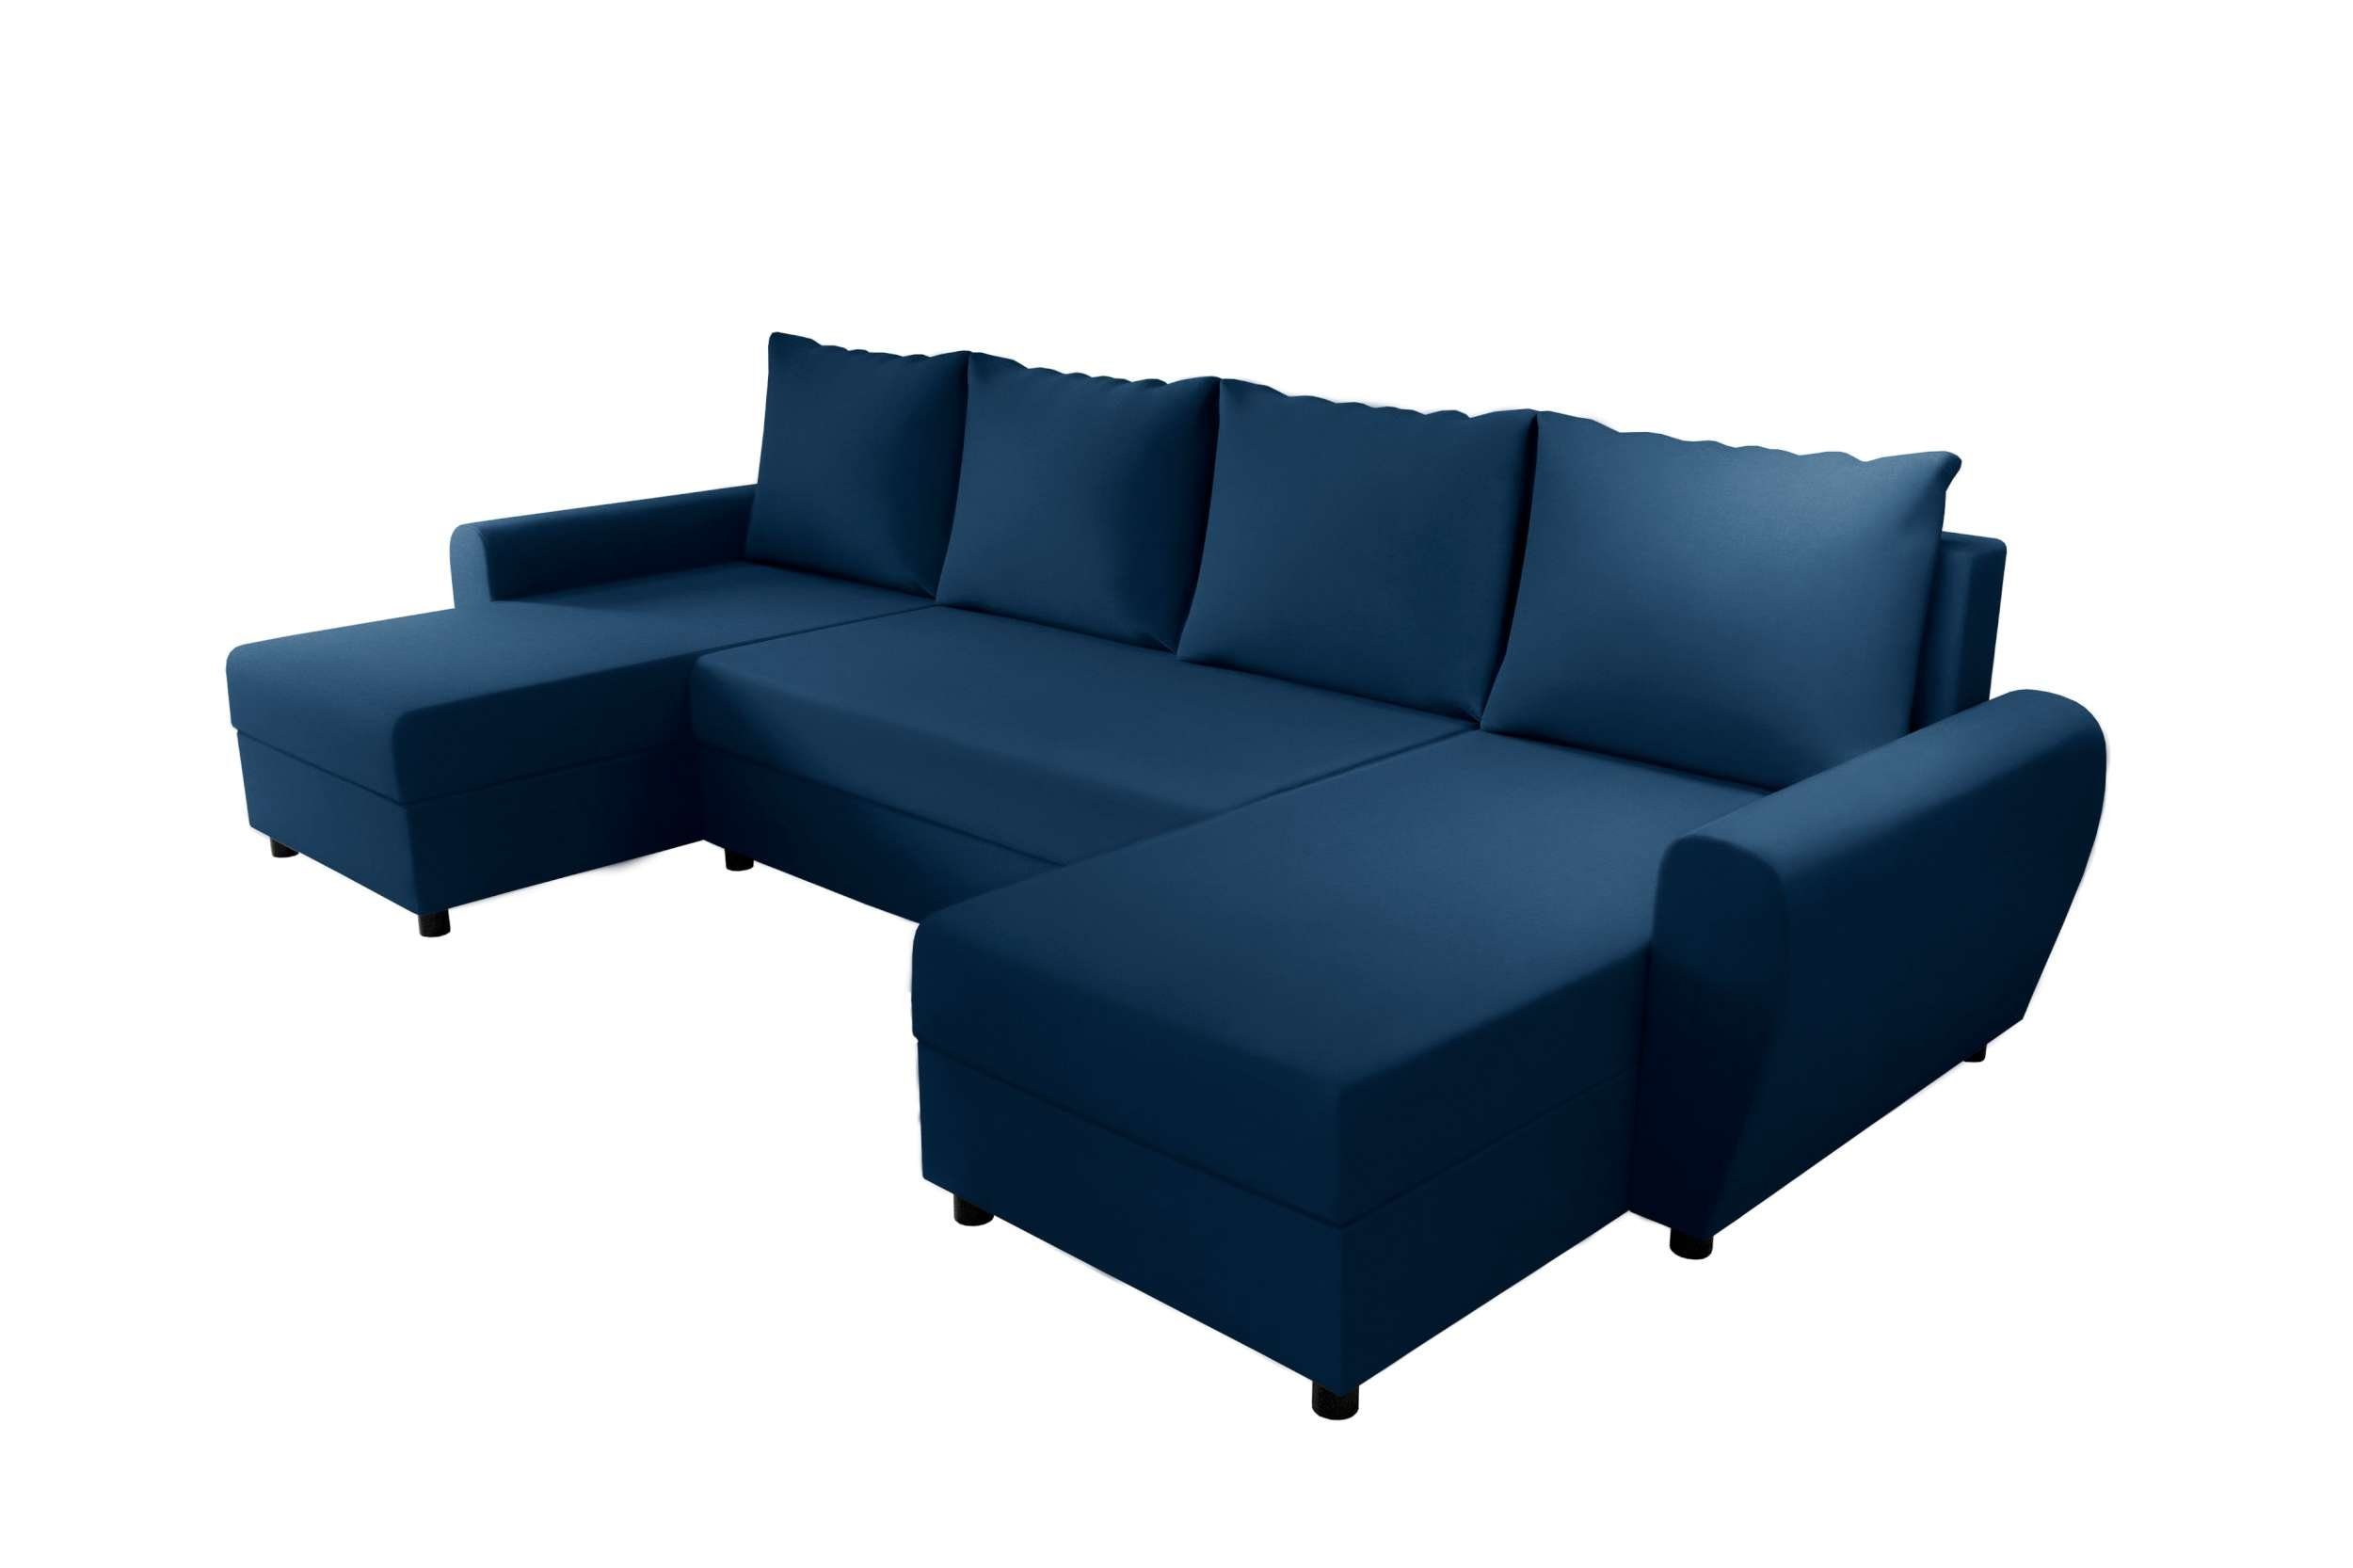 Stylefy Modern mit Sofa, Arlen, Bettfunktion, Design Eckcouch, Wohnlandschaft Sitzkomfort, Bettkasten, U-Form, mit